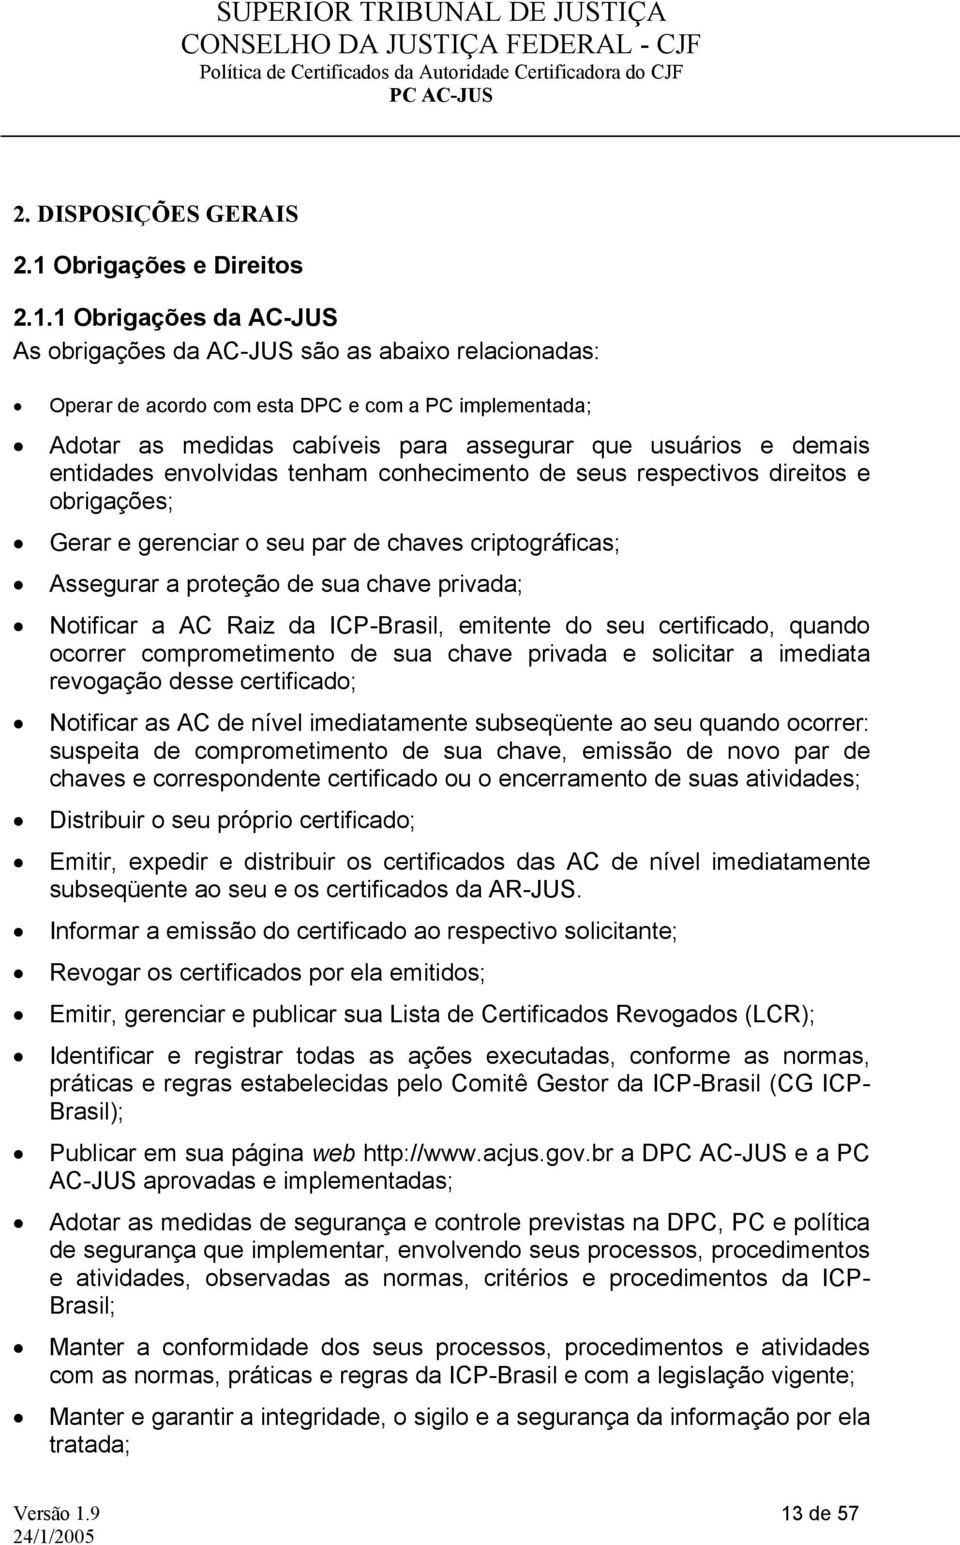 1 Obrigações da AC-JUS As obrigações da AC-JUS são as abaixo relacionadas: Operar de acordo com esta DPC e com a PC implementada; Adotar as medidas cabíveis para assegurar que usuários e demais